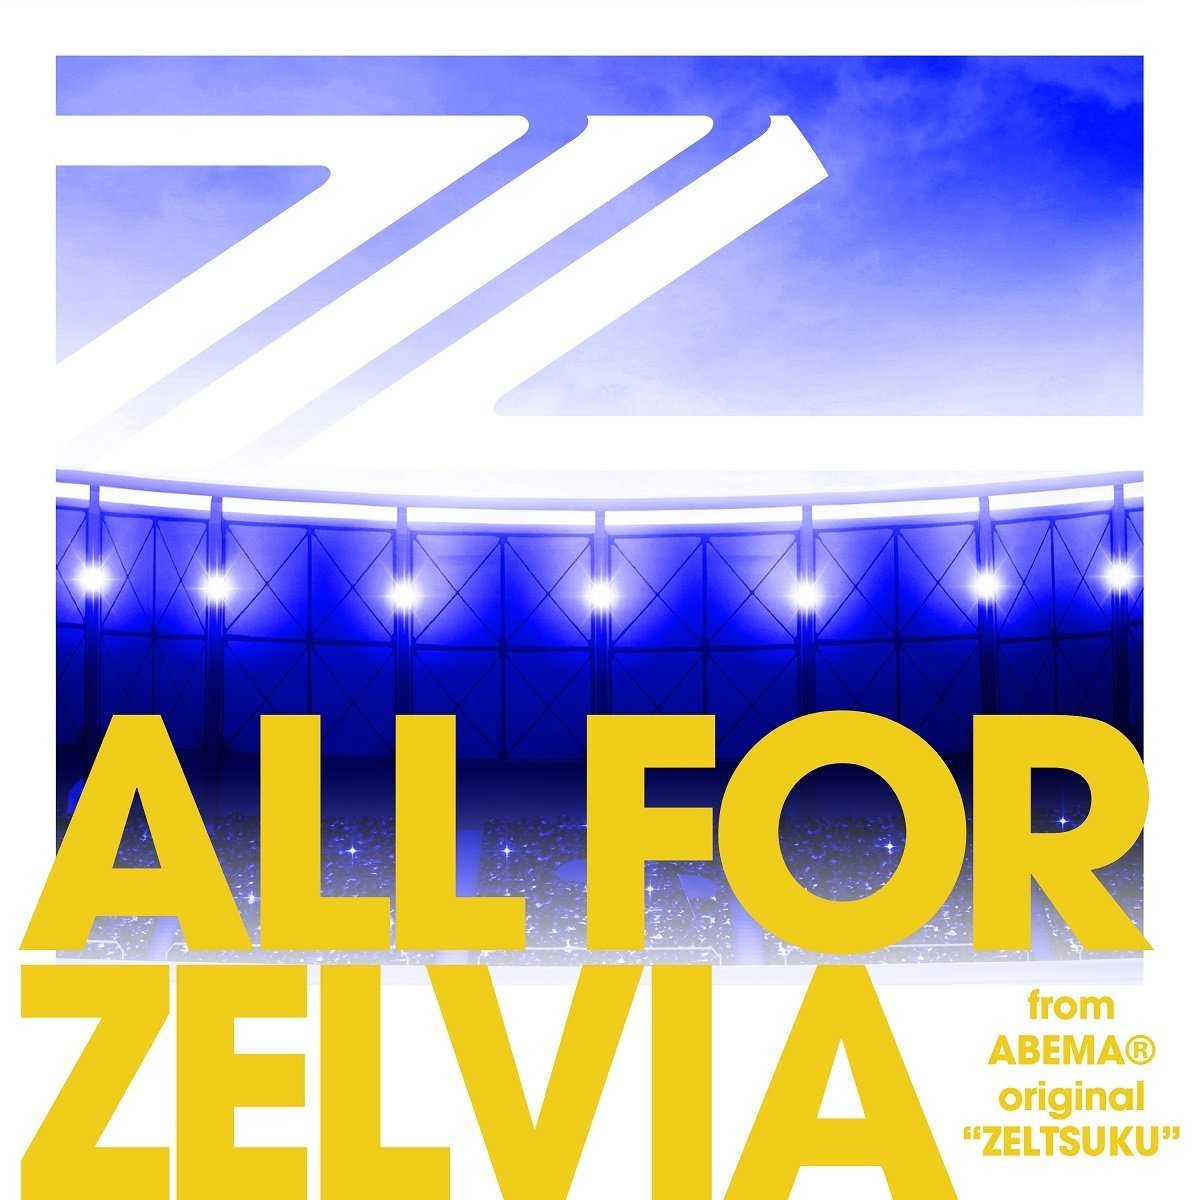 Fc町田ゼルビア 新応援ソング All For Zelvia の配信リリースが決定 Abemaの番組から誕生 サッカー Abema Times